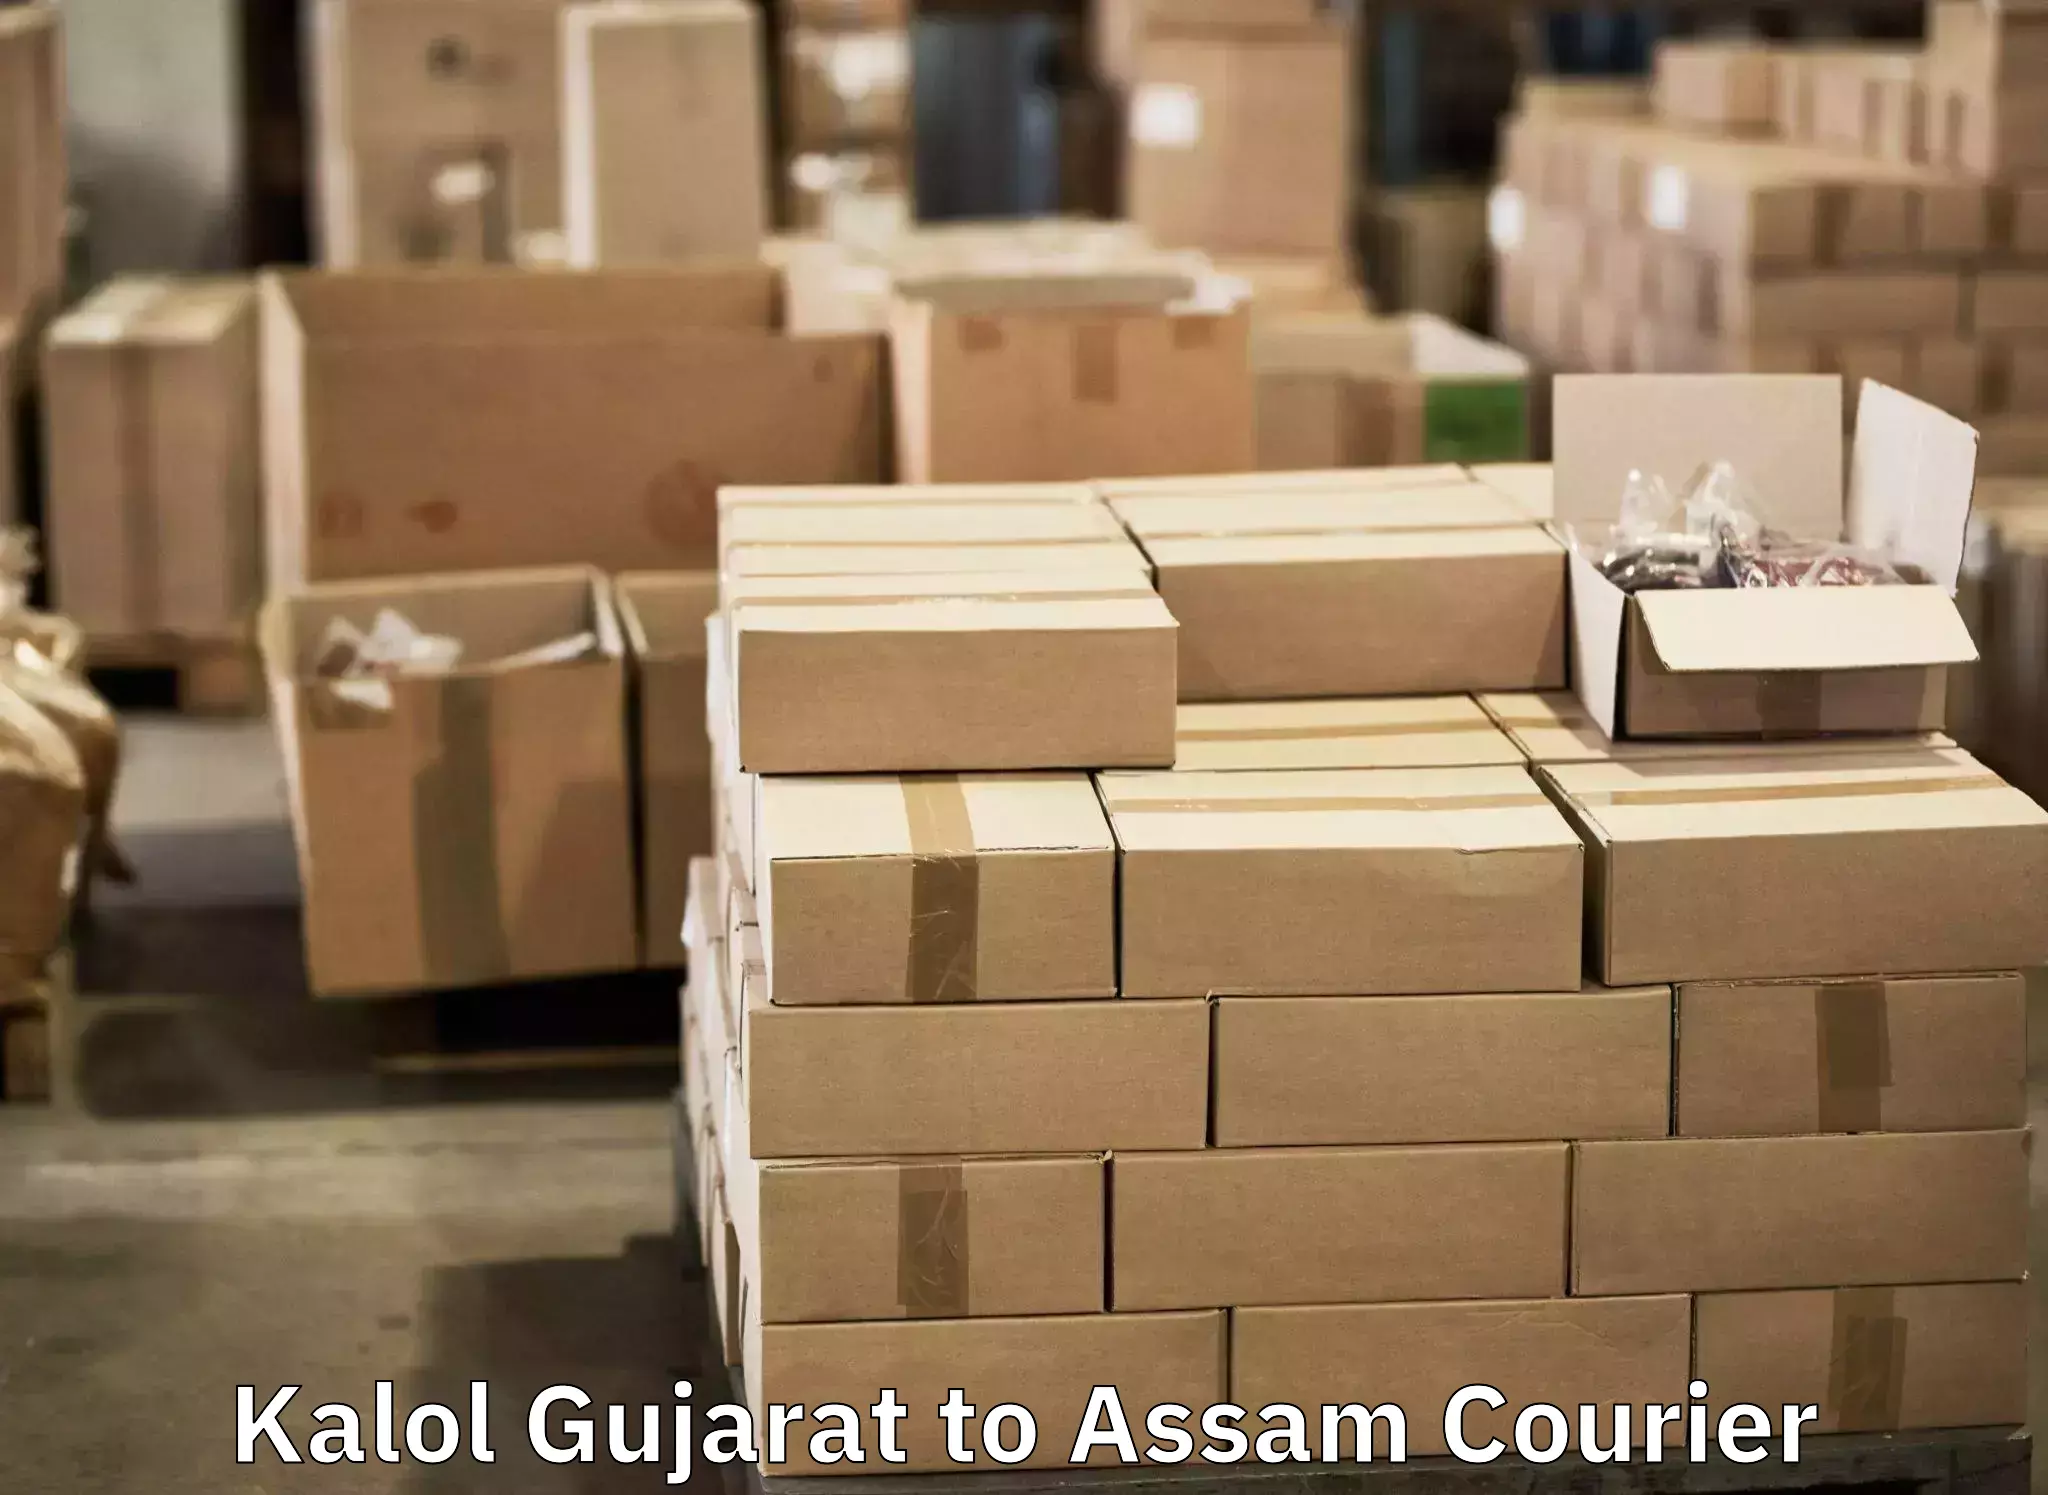 Luggage dispatch service Kalol Gujarat to Moranhat